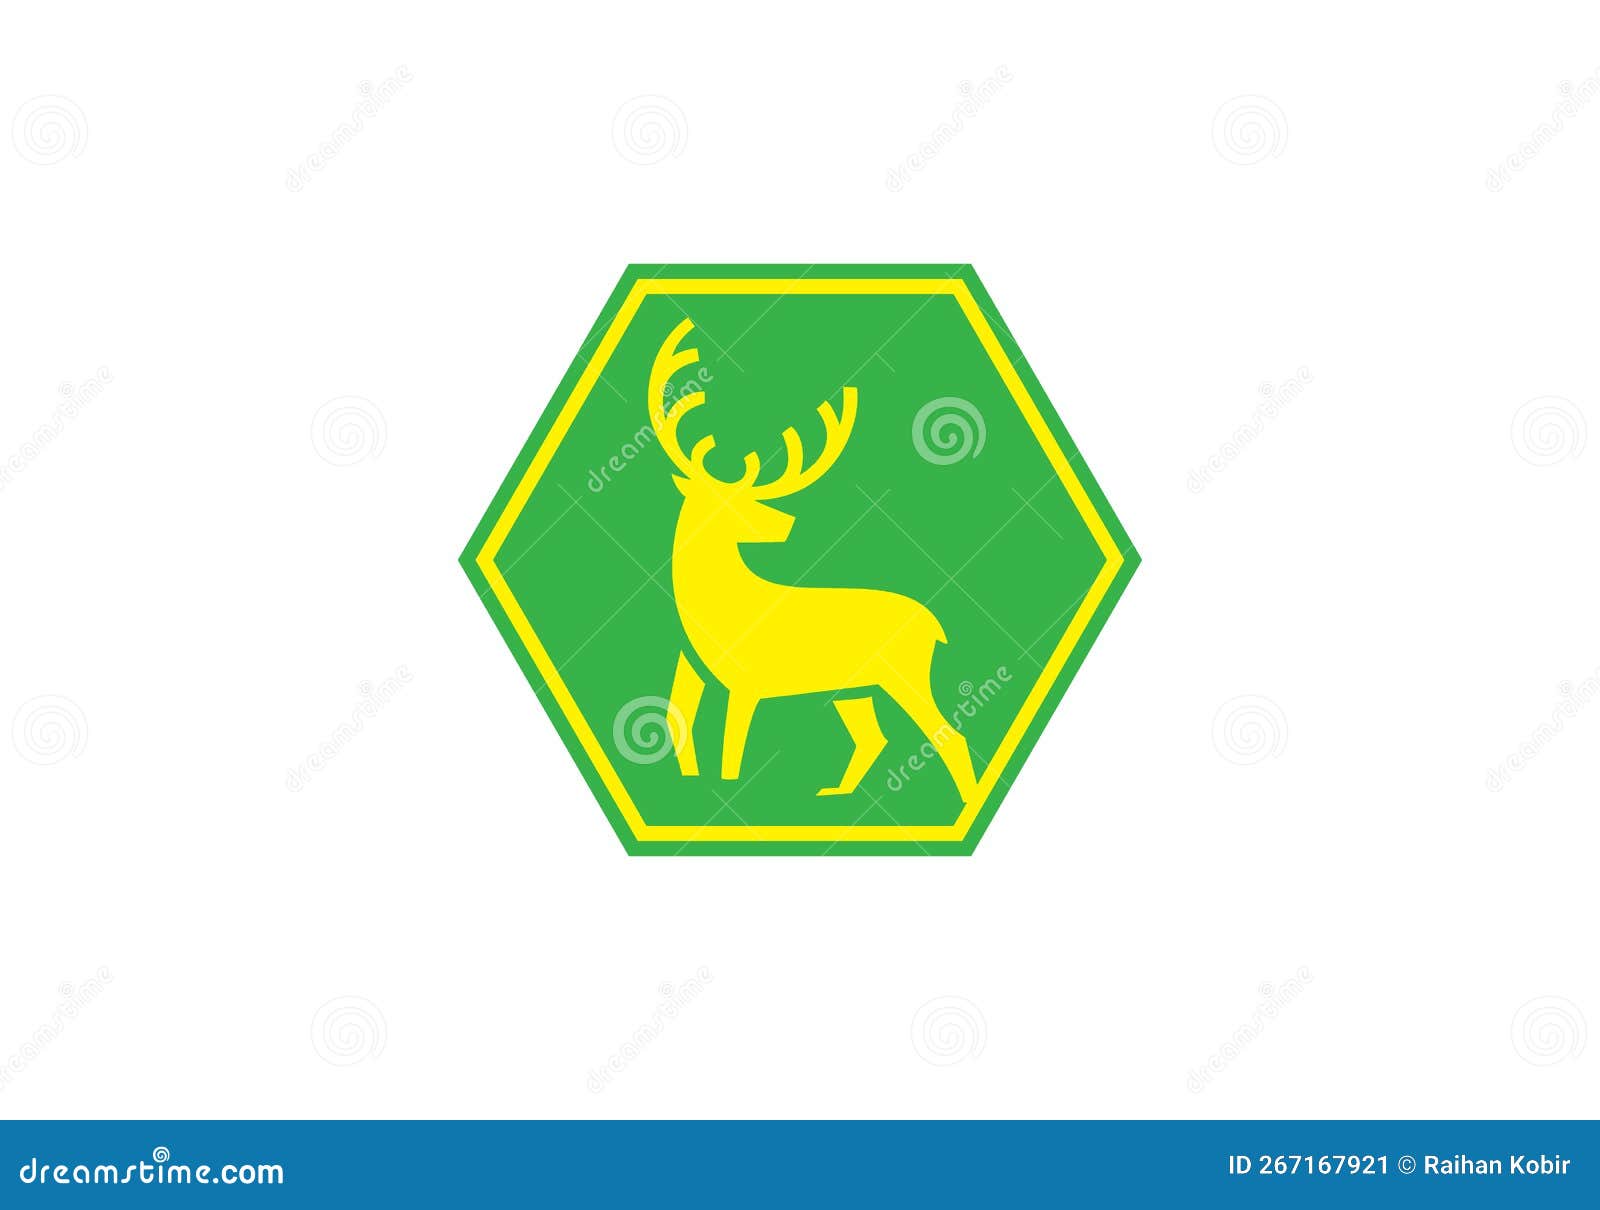 Biểu tượng Deer Logo sẽ đem lại sự sang trọng và chuyên nghiệp cho kinh doanh của bạn. Hãy xem bức hình minh họa này để cảm nhận được điều đó.